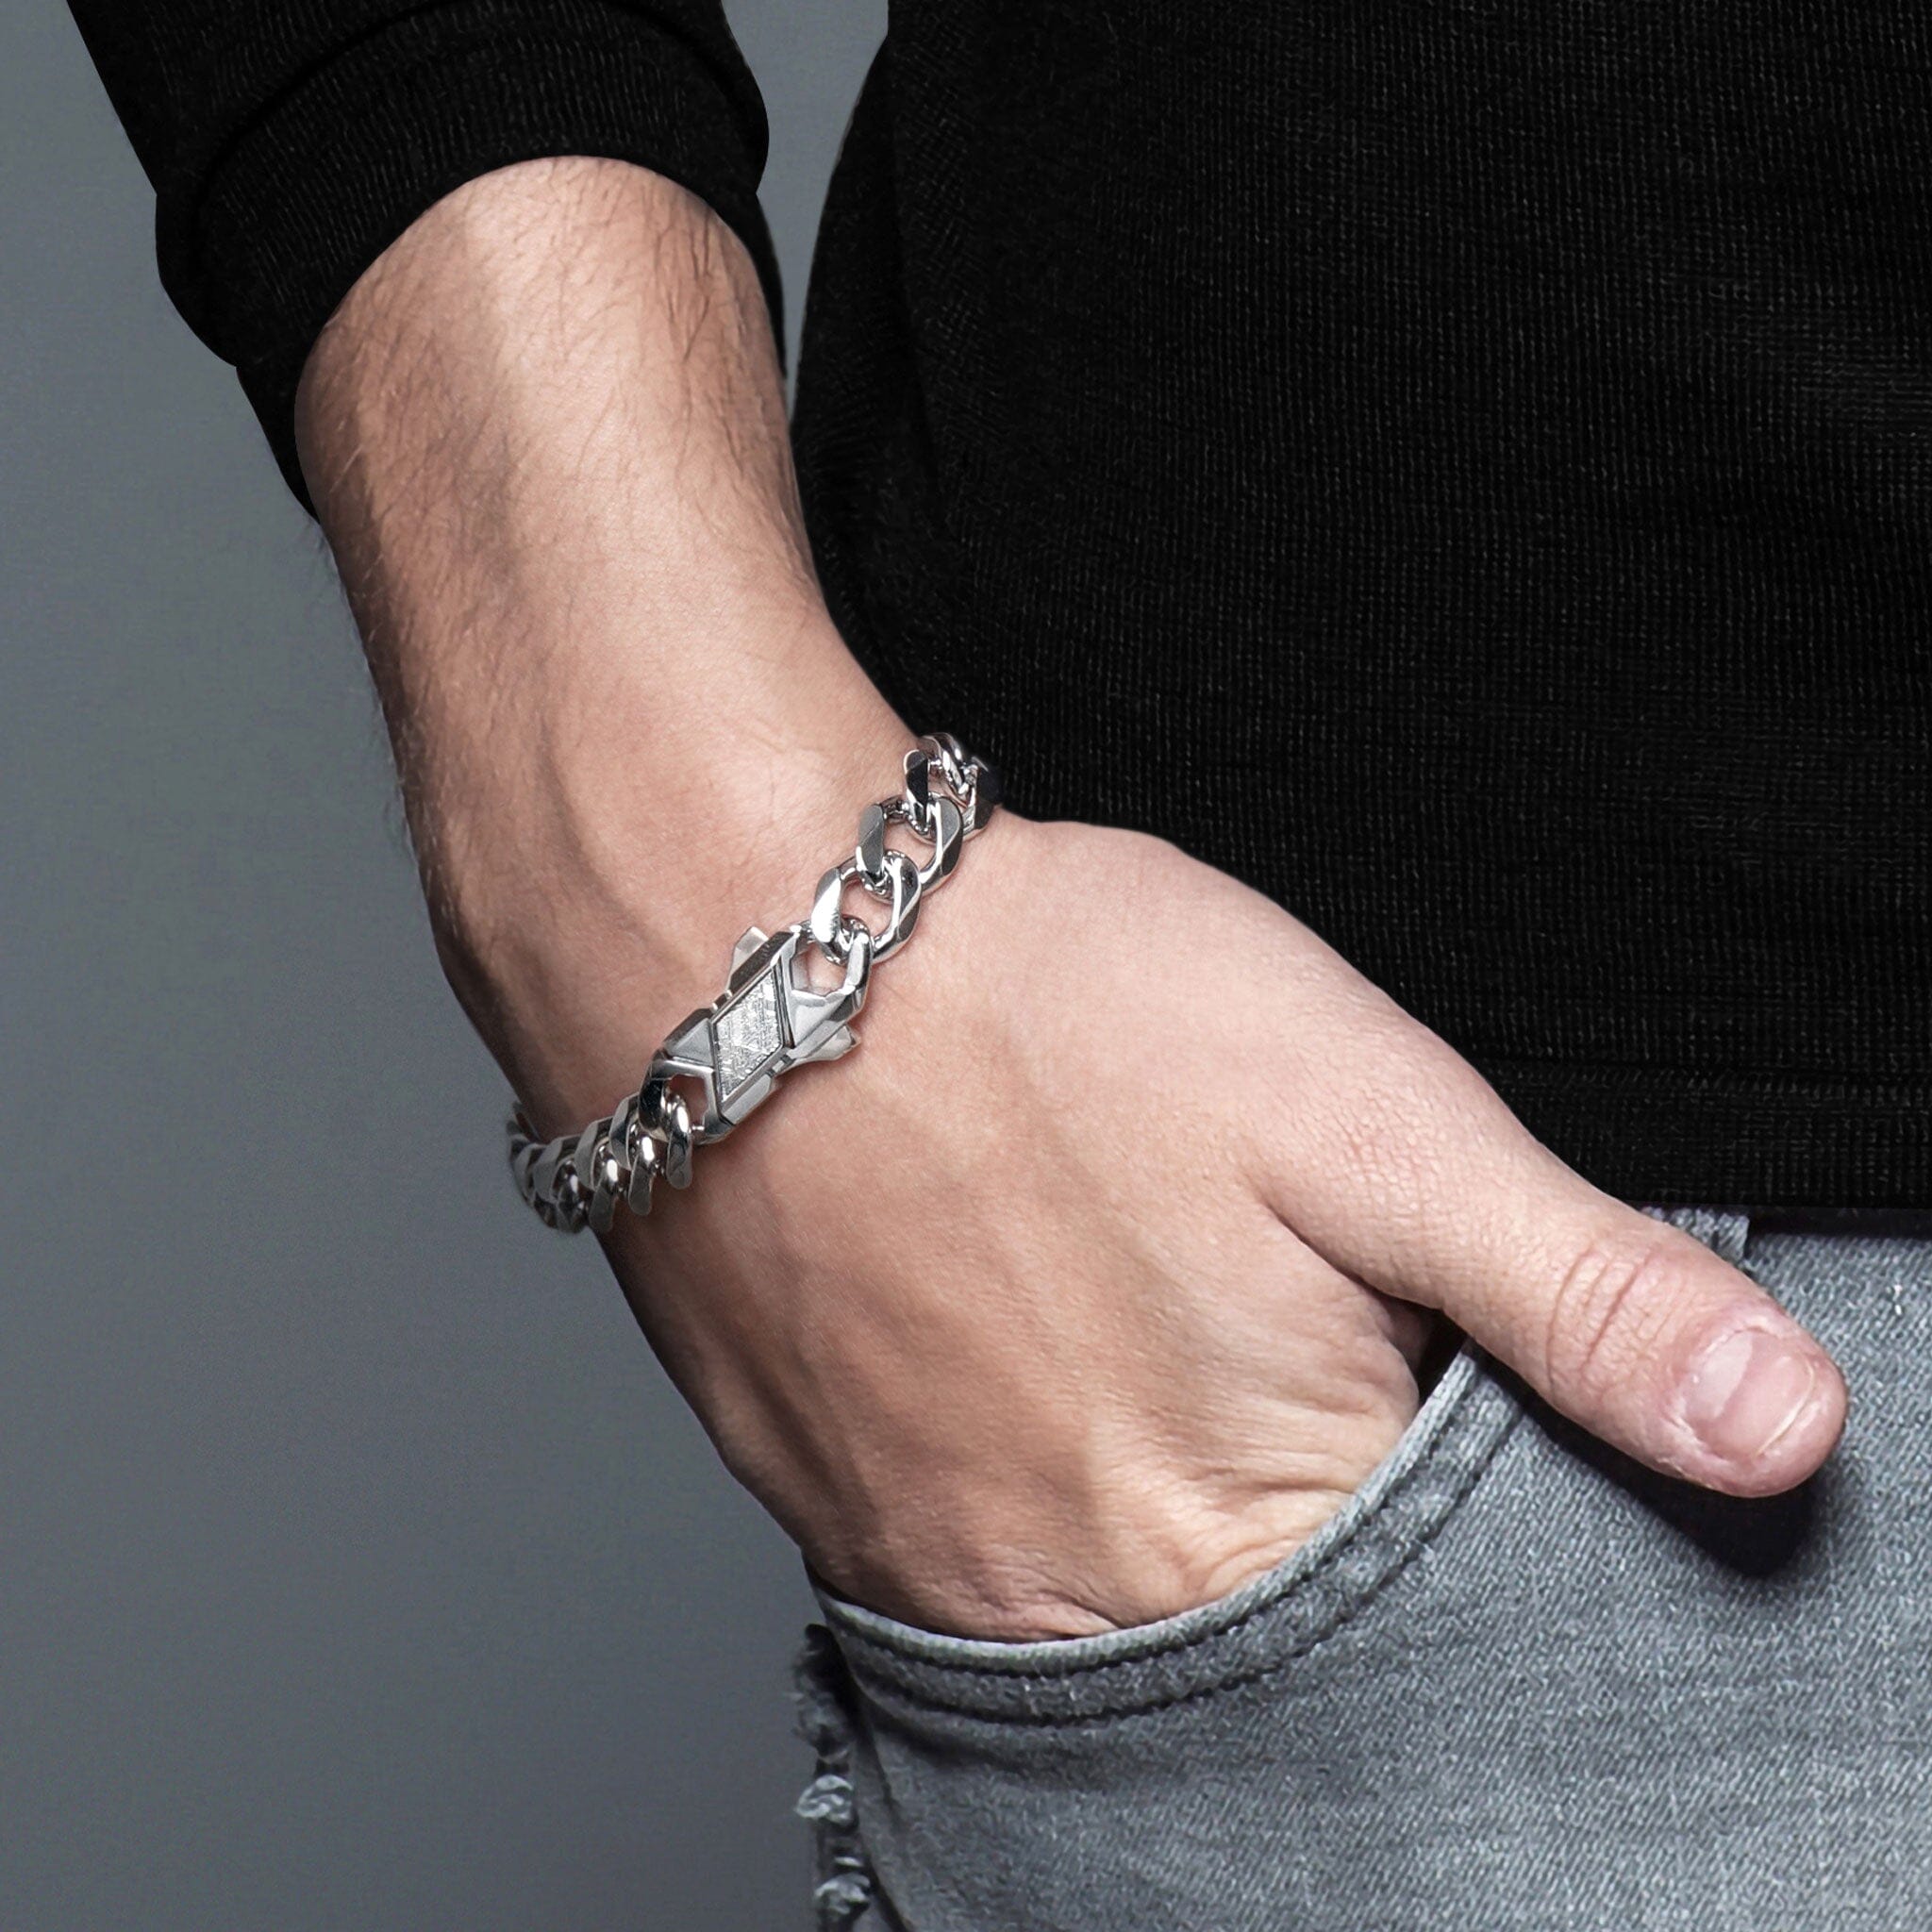 Men's Silver Cuban Link Chain Bracelet with Meteorite Bracelets WAA FASHION GROUP 